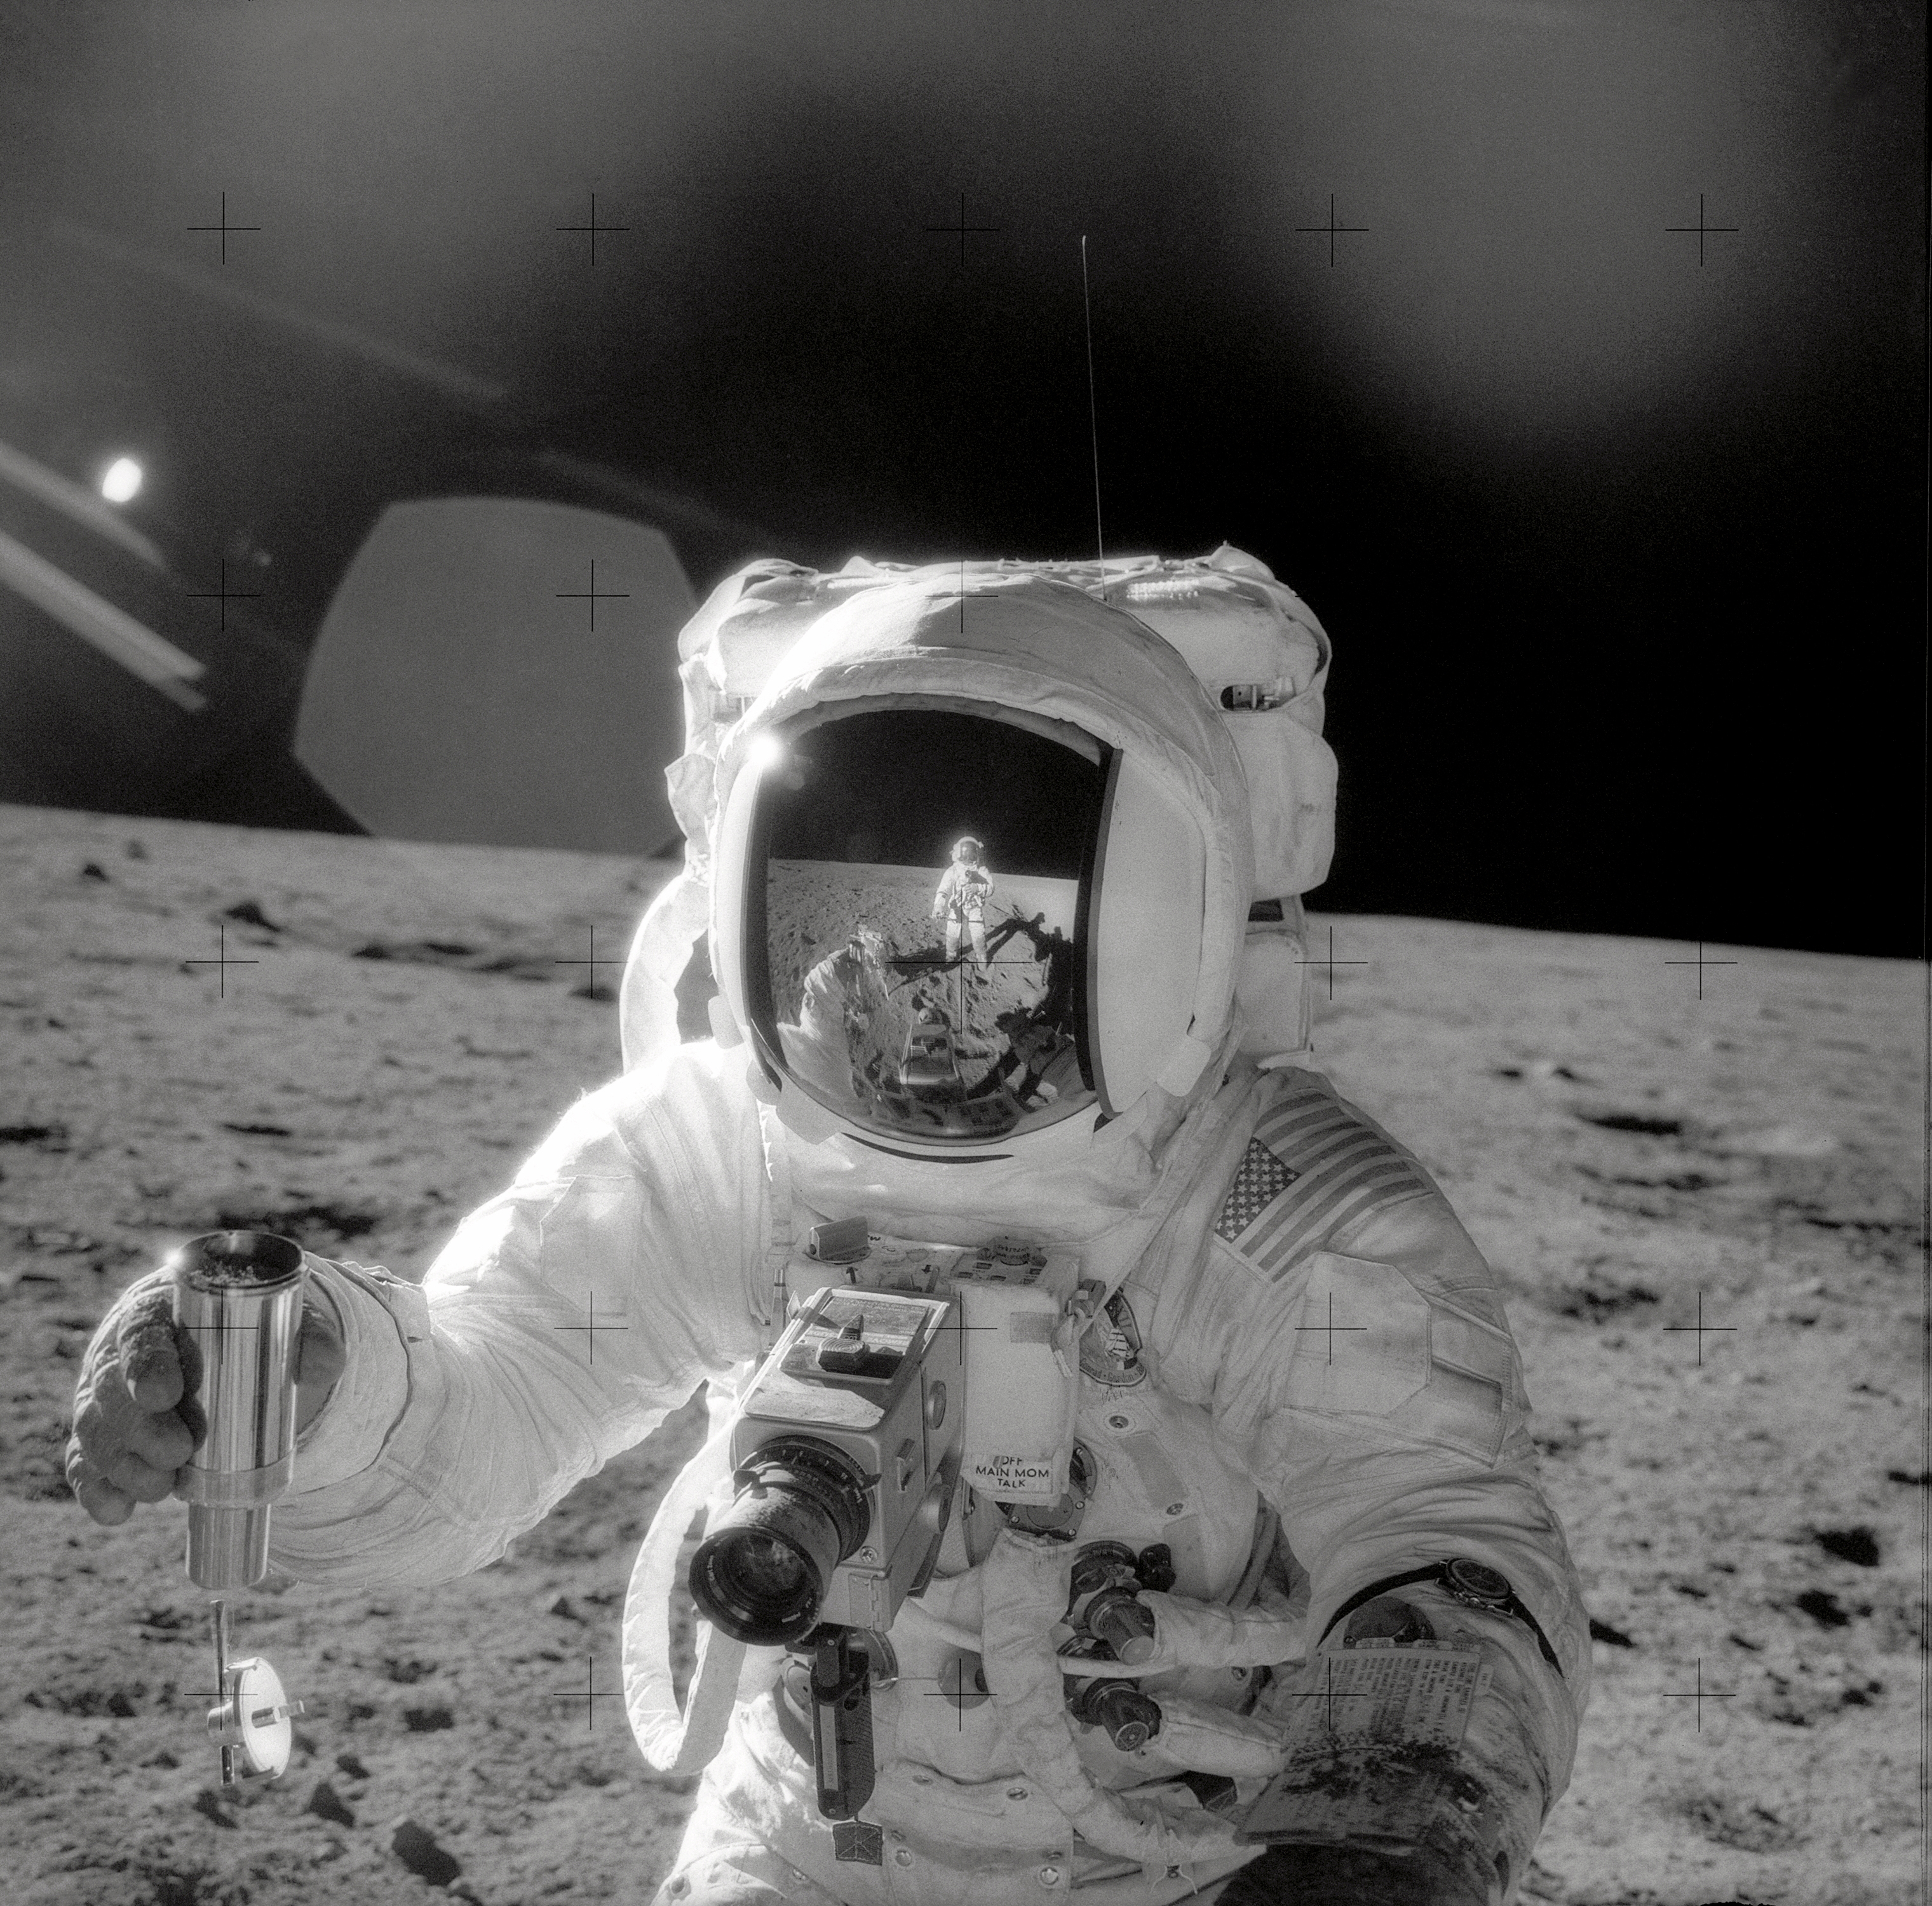 아폴로 미션 수행 중 달 표면에서 채취한 토양 샘플을 들고 있는 우주인의 모습.